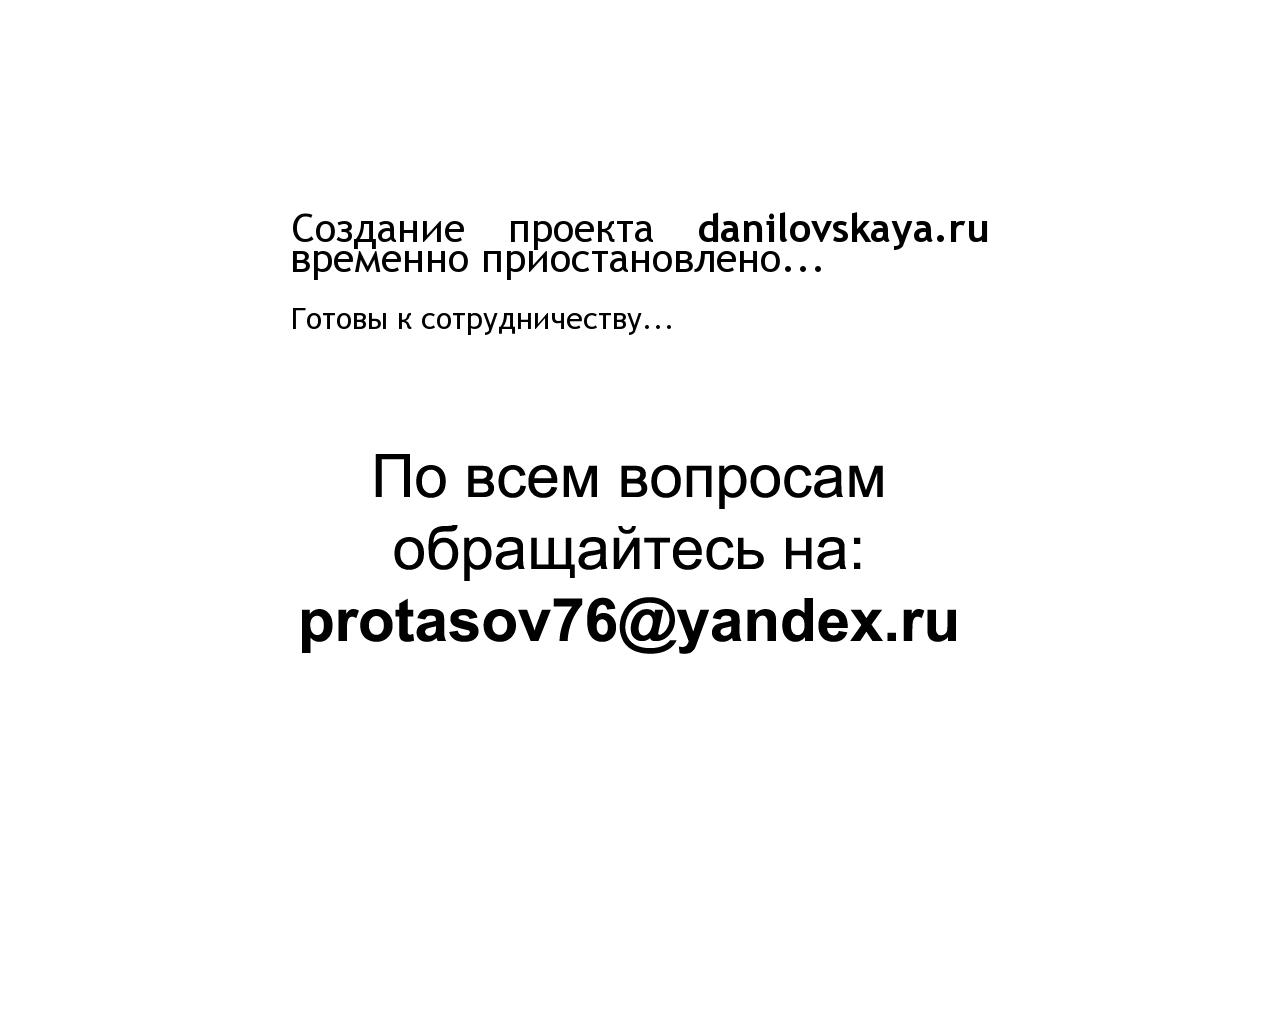 Изображение сайта danilovskaya.ru в разрешении 1280x1024